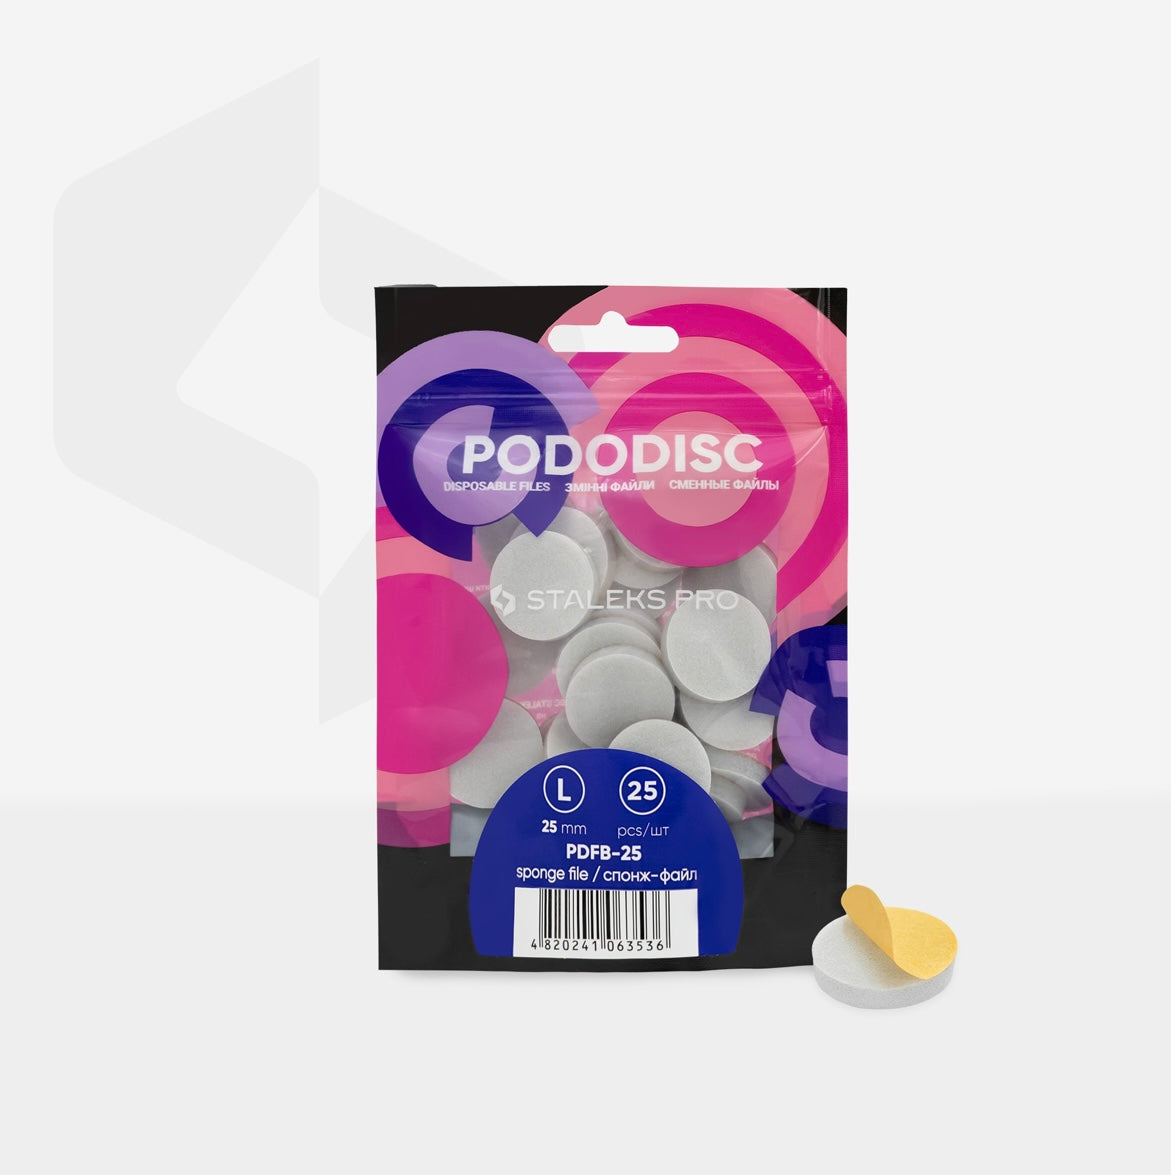 Staleks Pro Pododisc Disposable Disc L 25 mm Files Sponges for Pedicure, 25 pcs, PDFB-25